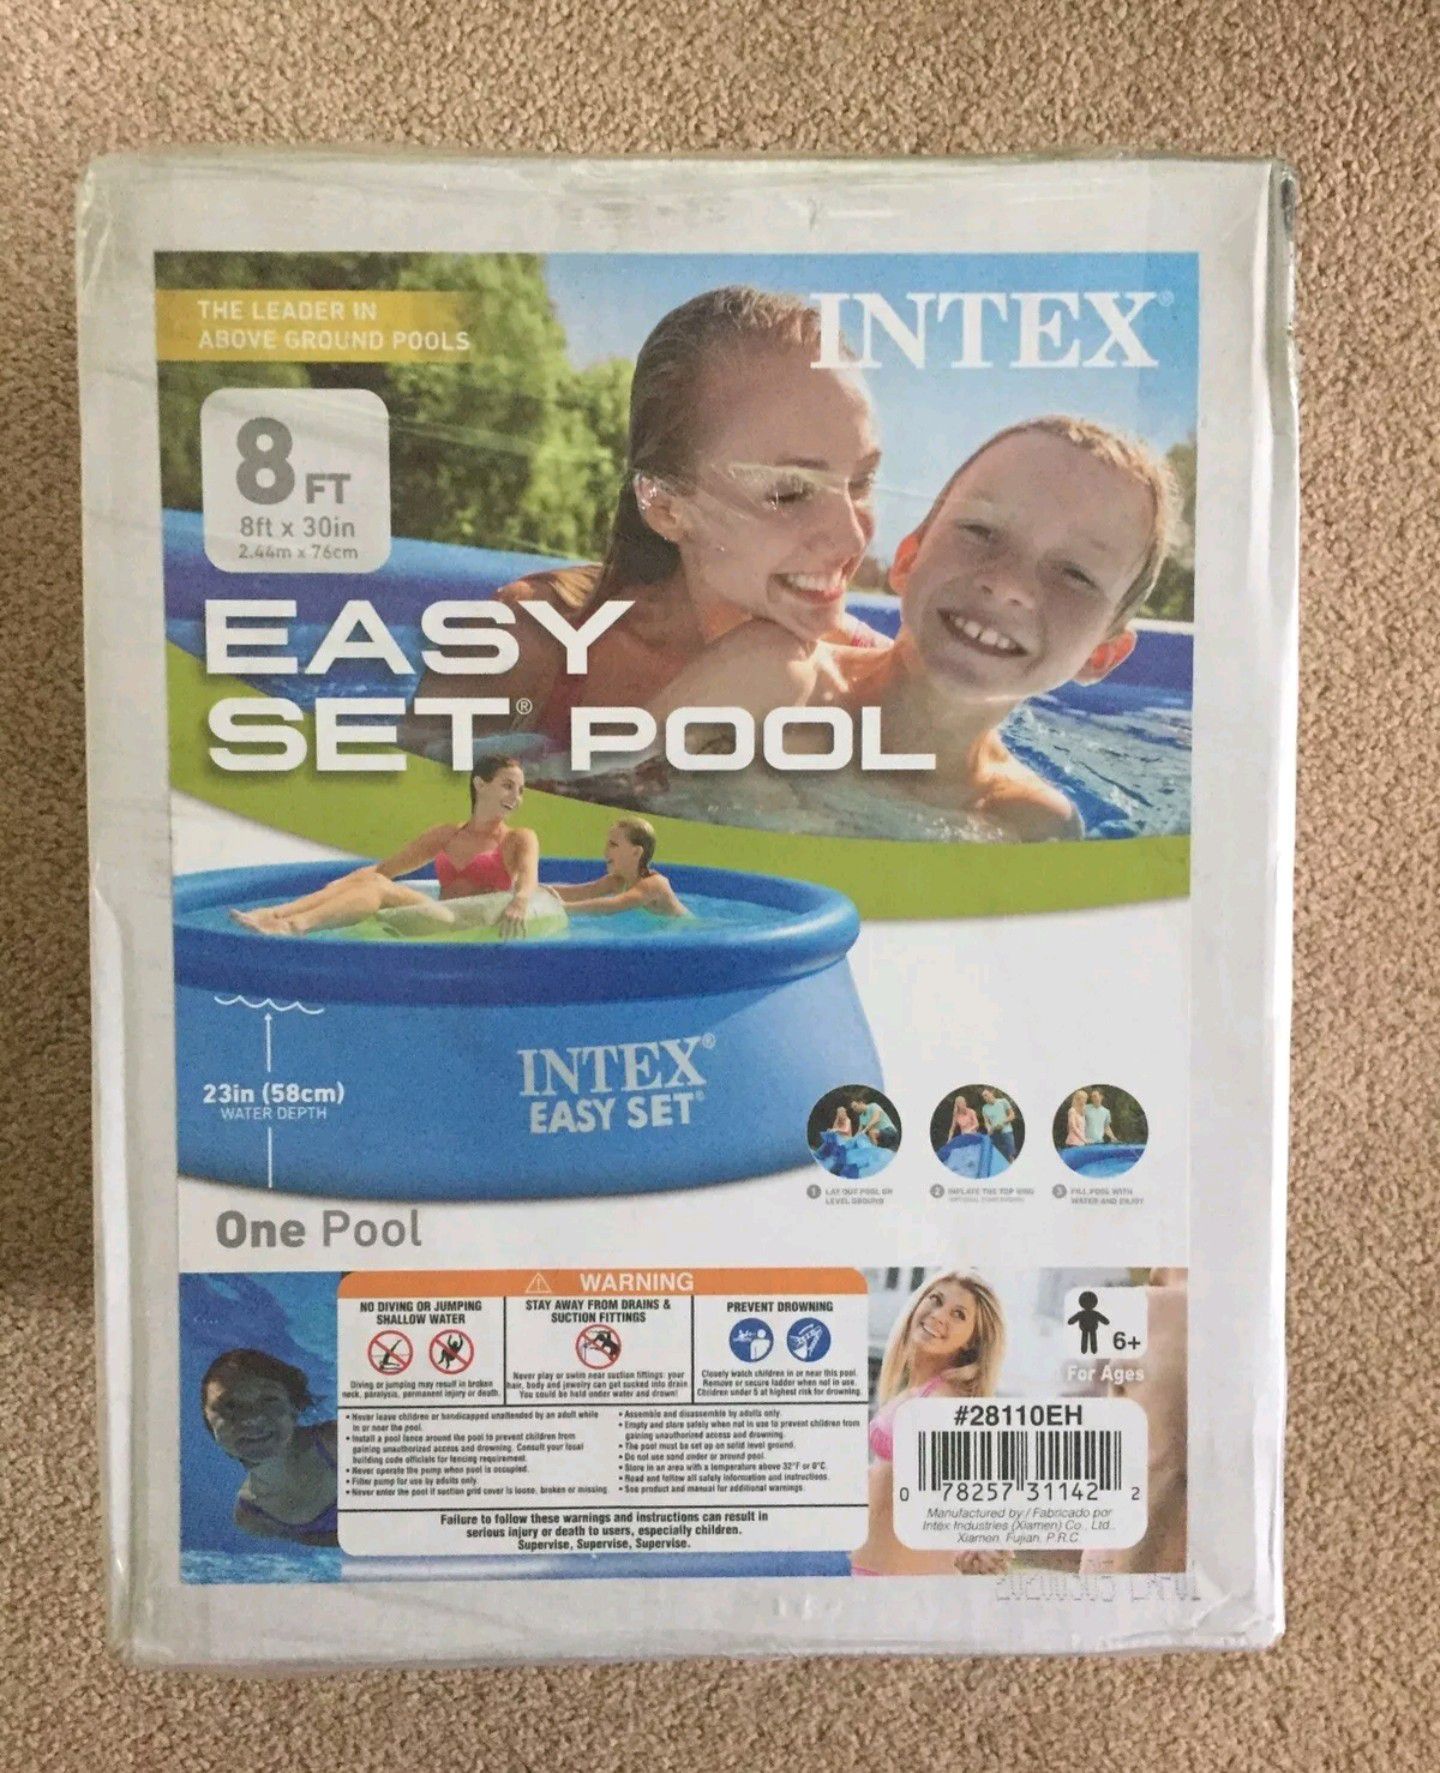 Intex 8x30 Easy Set Pool Swimming Pool